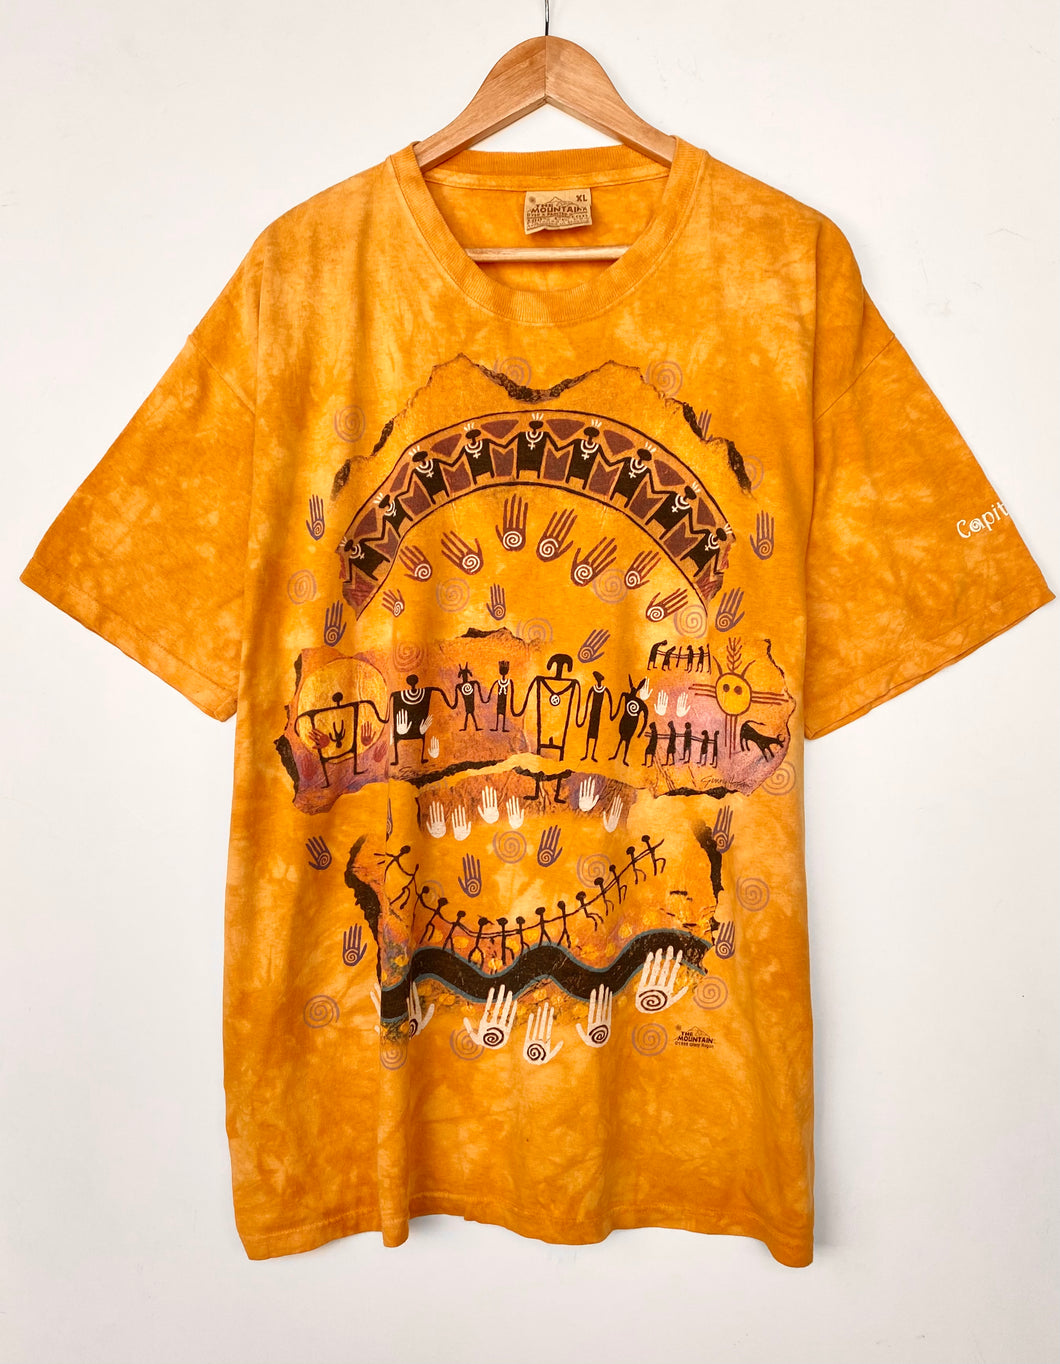 Aztec Print Tie-Dye t-shirt (XL)